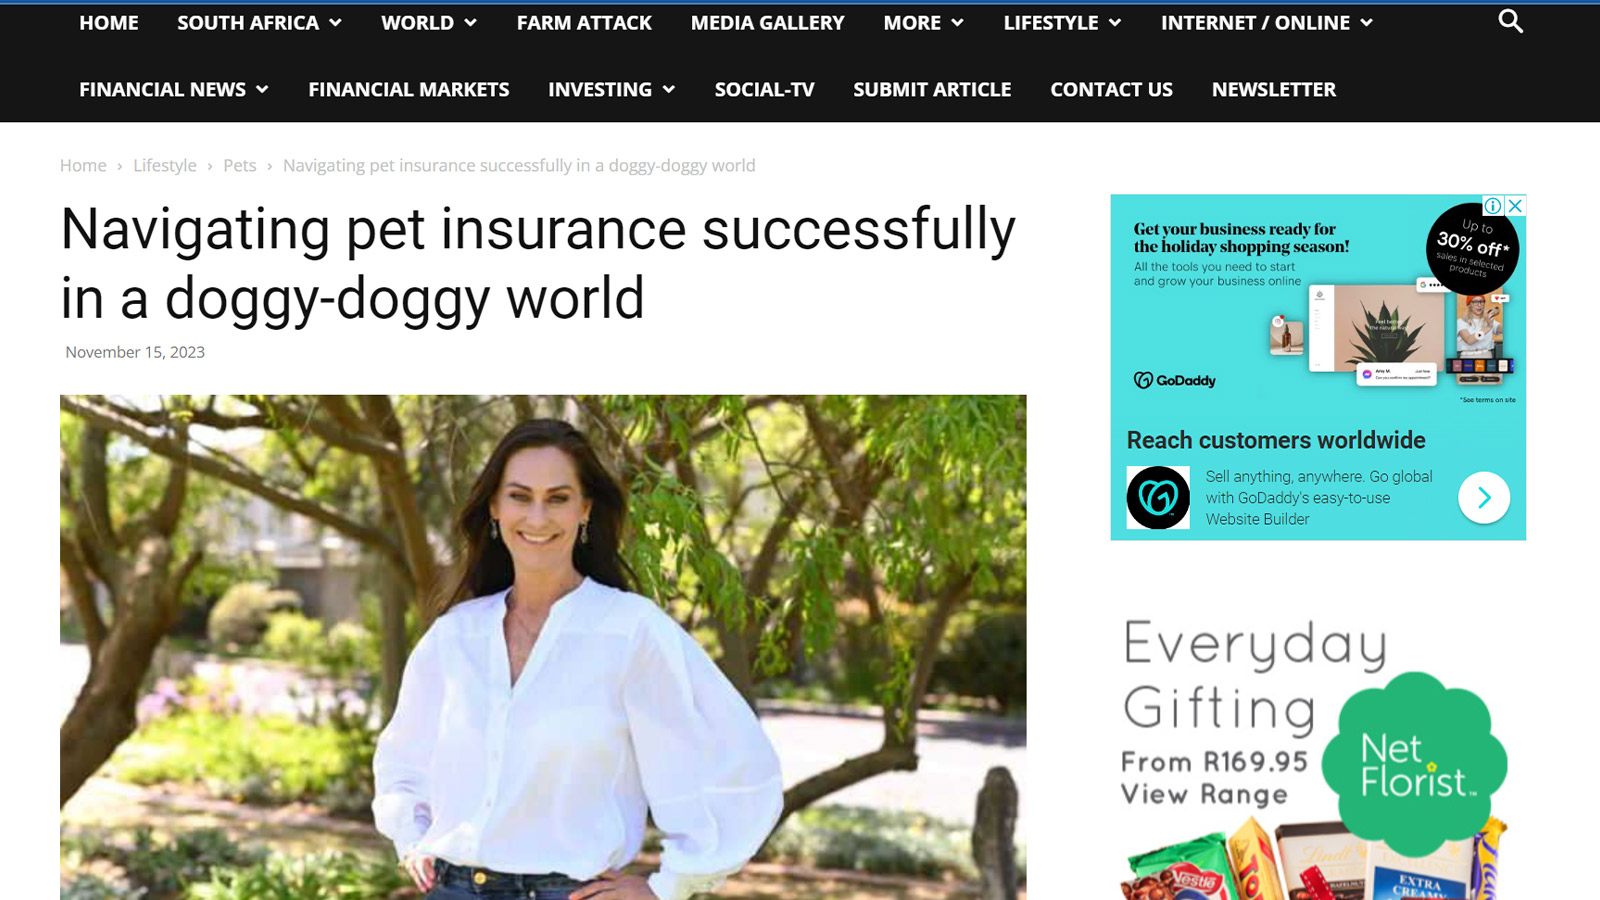 Southafricatoday.net | Navigating pet insurance